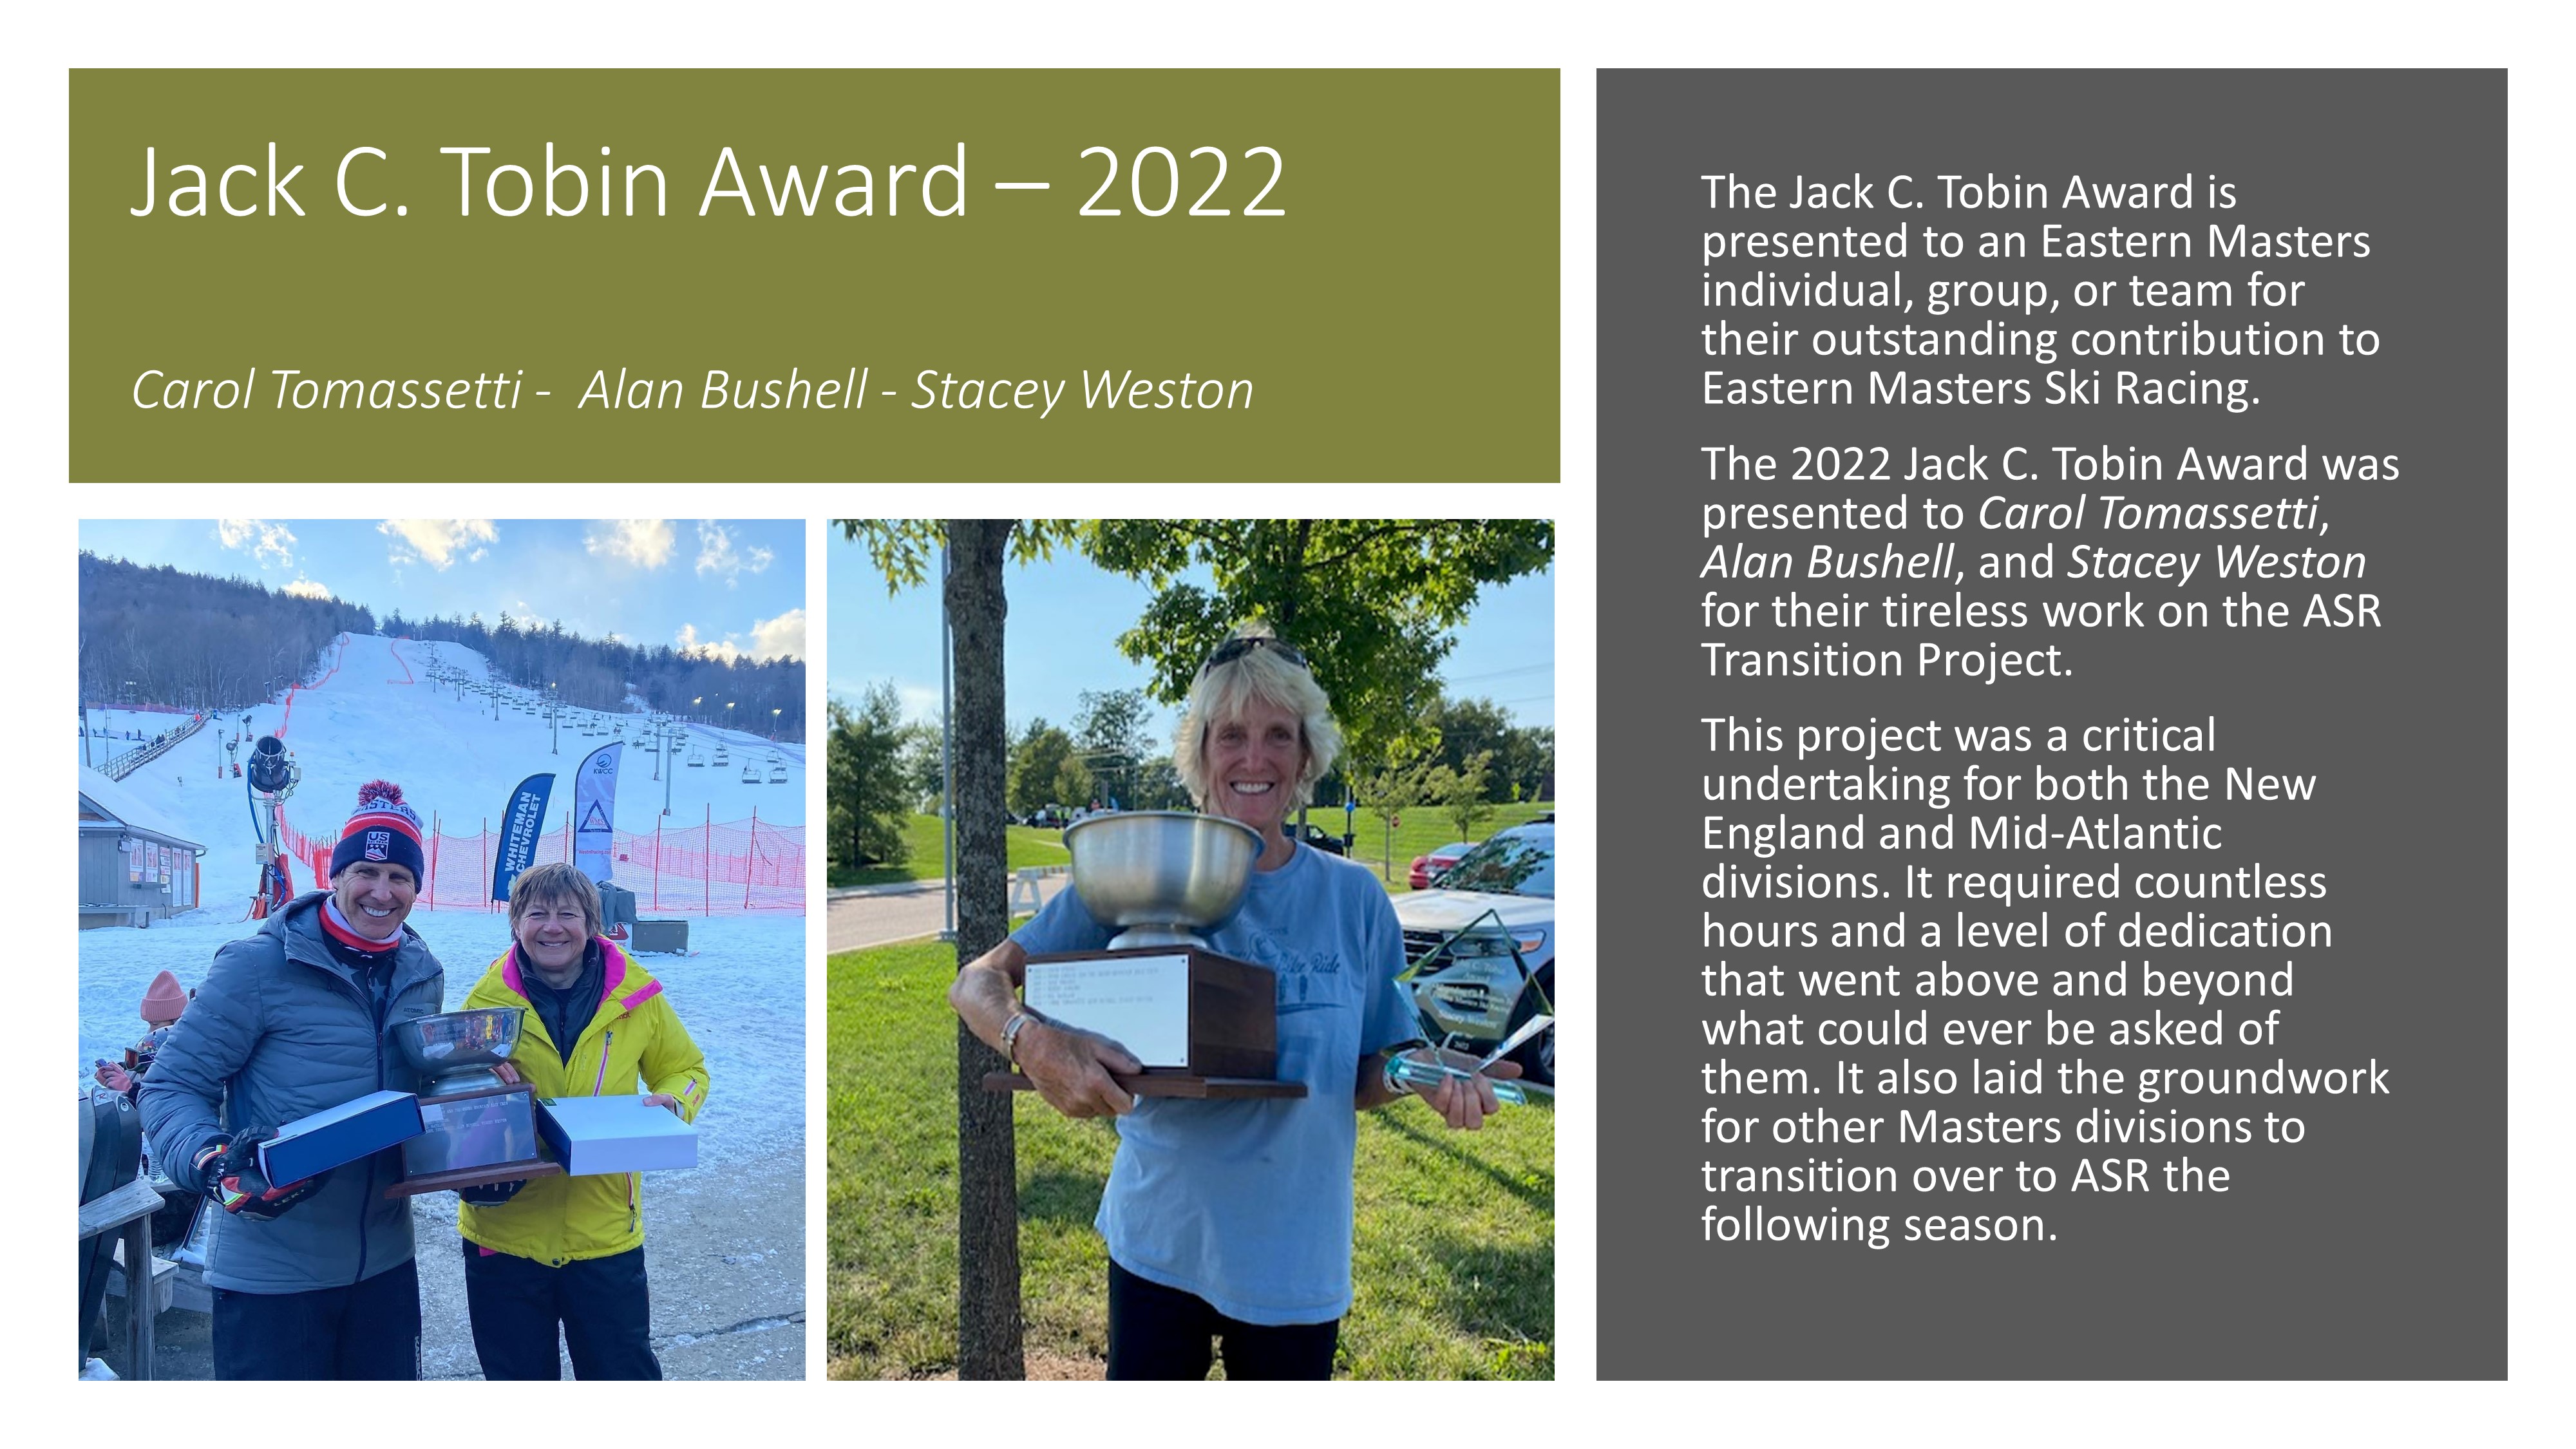 Jack C. Tobin Award - 2022